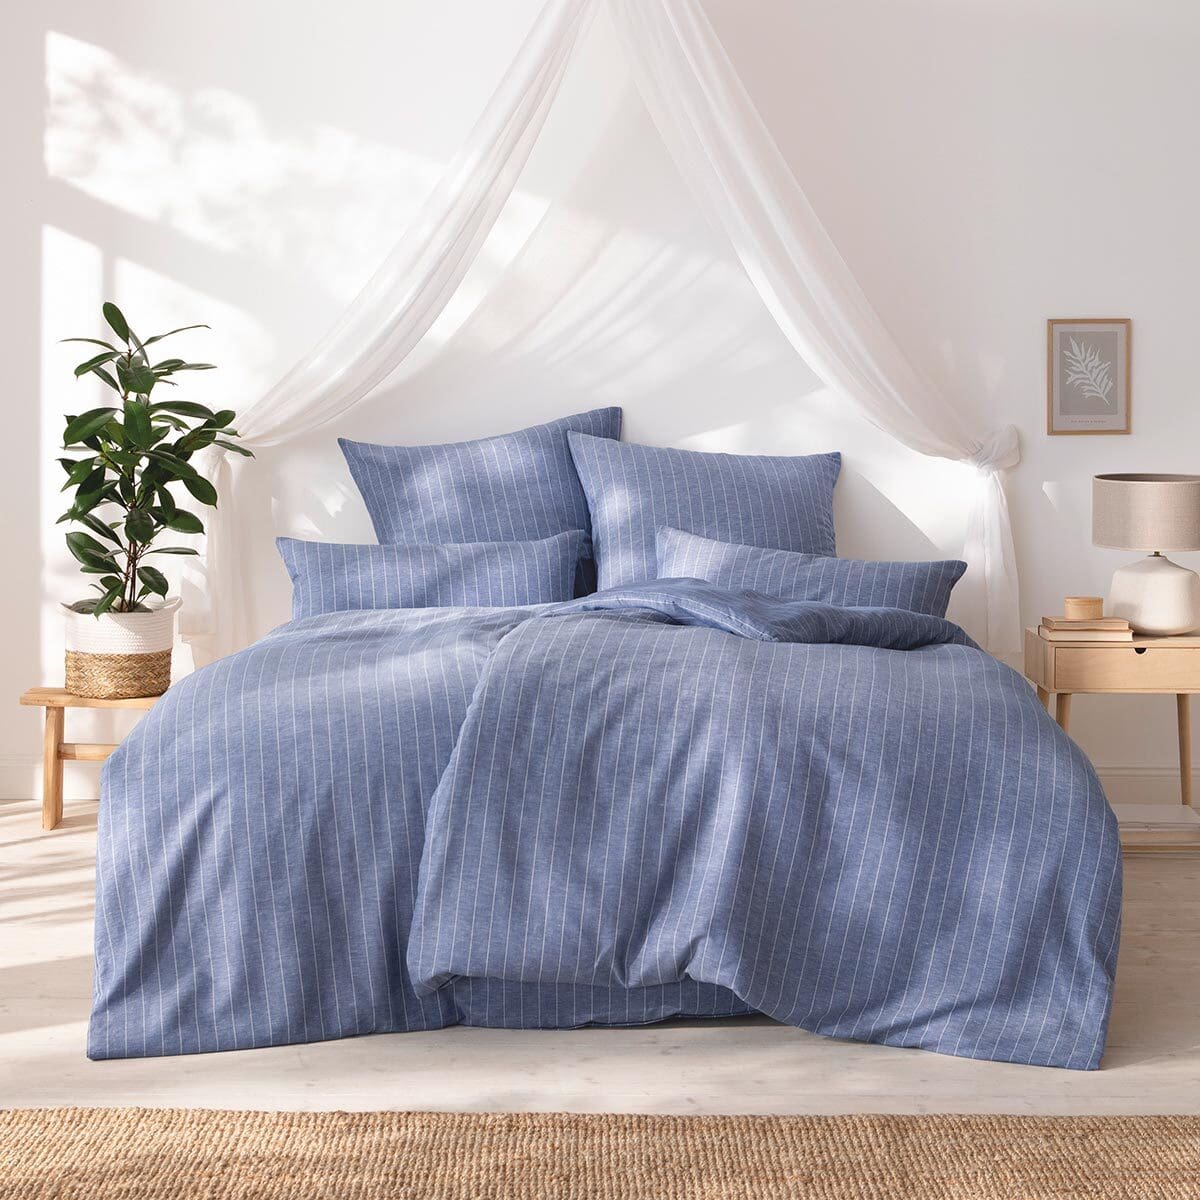 Estella Halbleinen Bettwäsche bei kaufen Bettwaren Tavira blau Shop online günstig